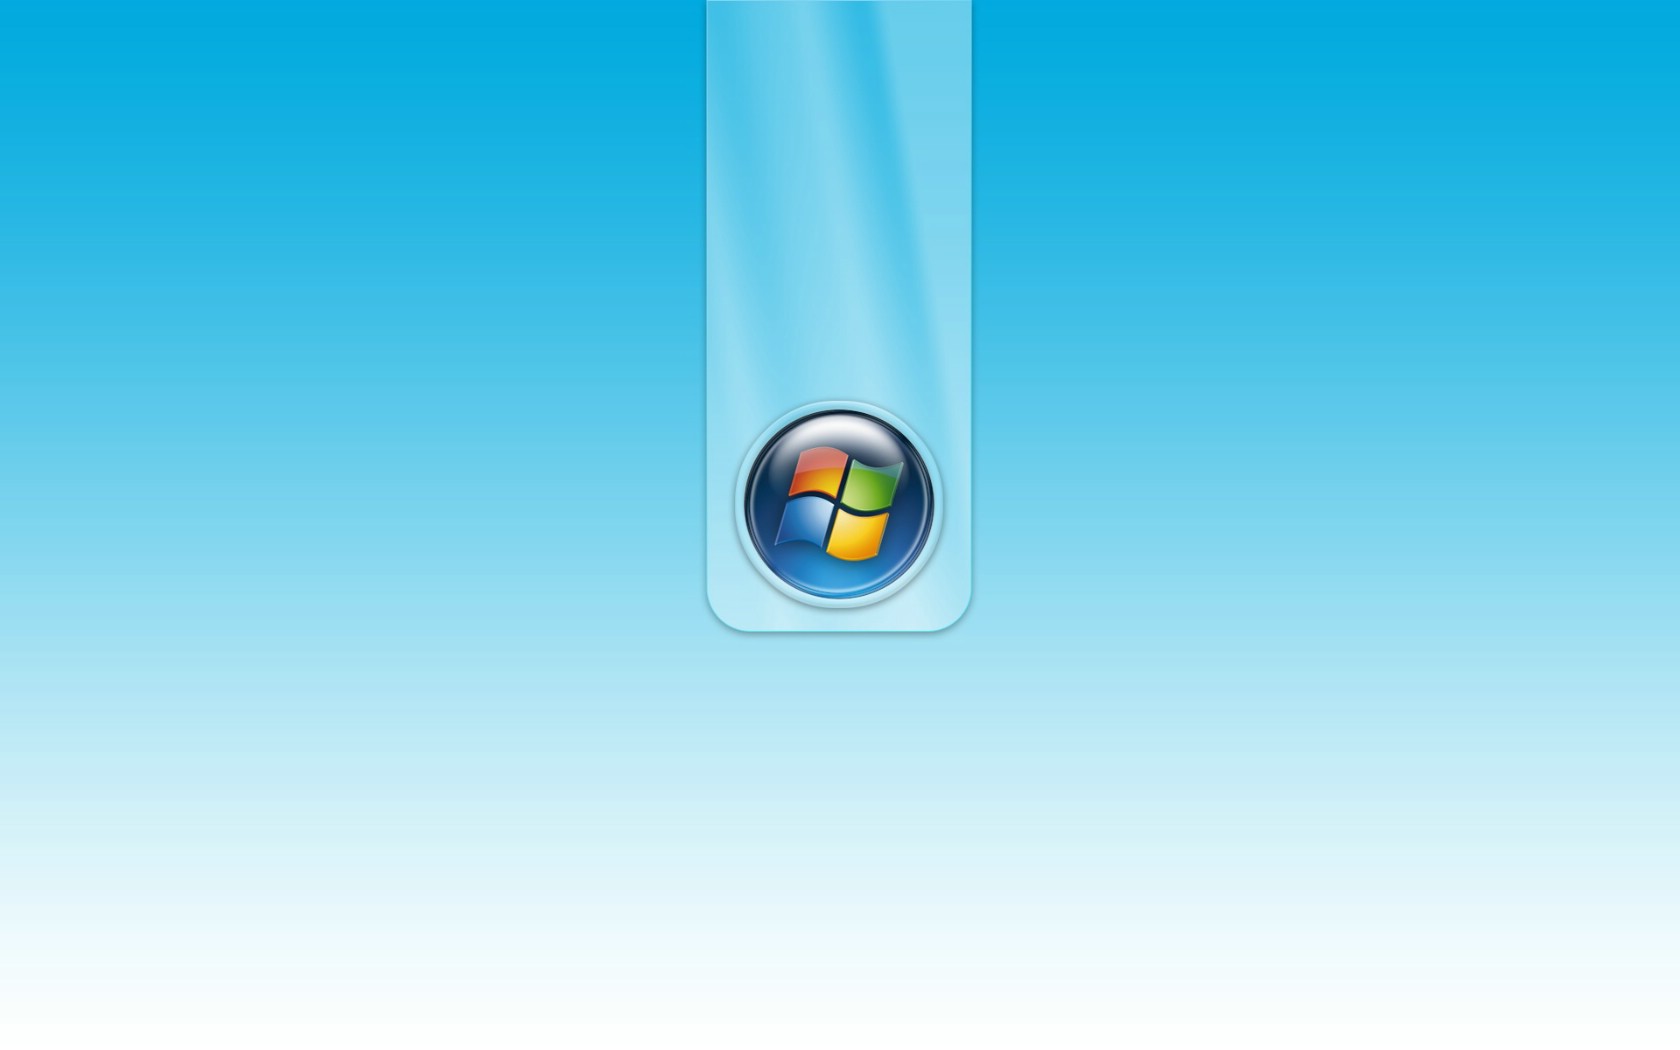 壁纸1680x1050超高分辨率Windows Vista简约壁纸壁纸 超高分辨率Windows Vista简约壁纸壁纸 超高分辨率Windows Vista简约壁纸图片 超高分辨率Windows Vista简约壁纸素材 创意壁纸 创意图库 创意图片素材桌面壁纸